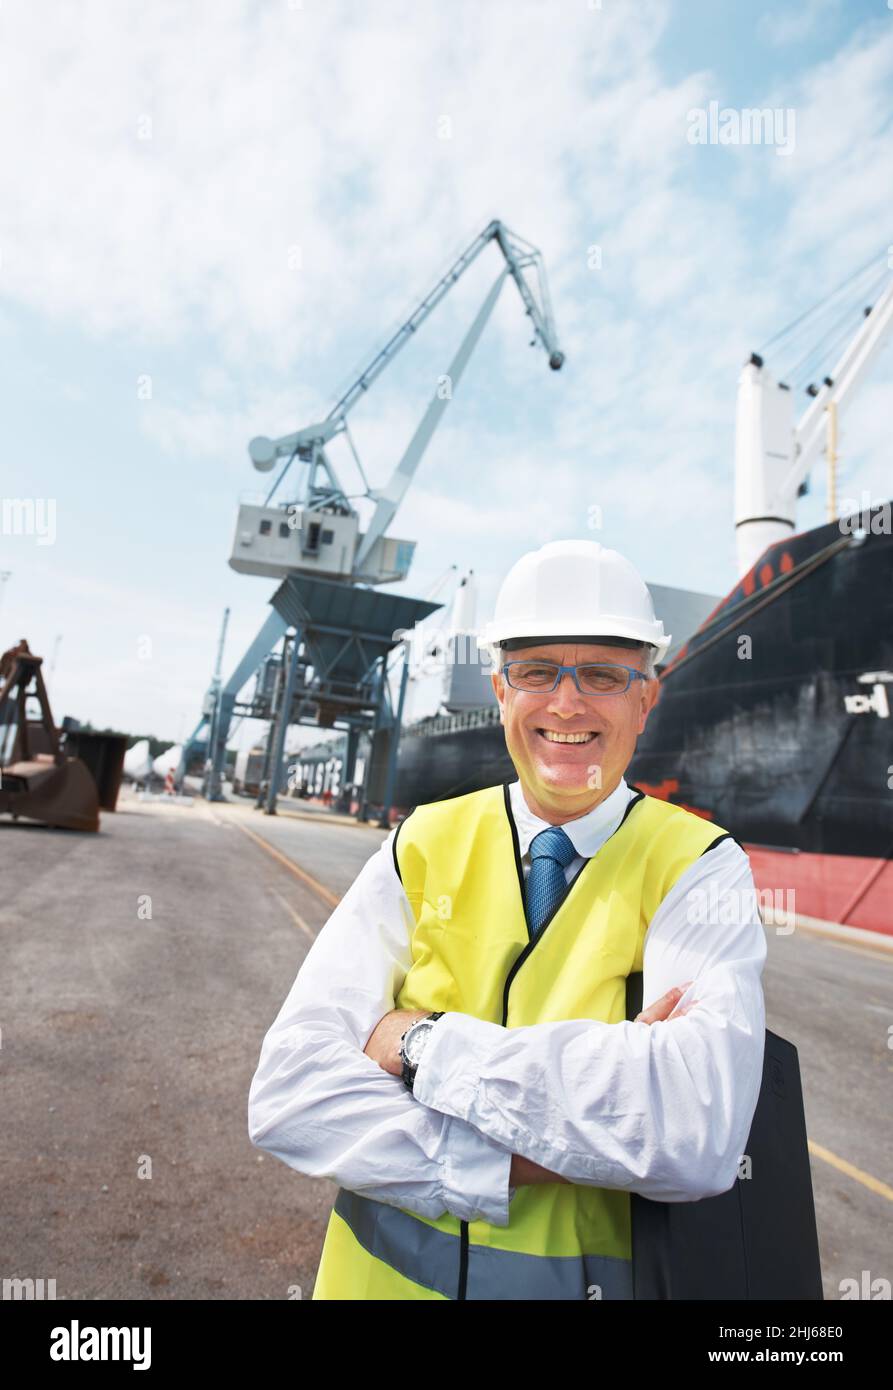 Il mio lavoro mi porta una gioia tremenda. Ritratto di un lavoratore portuale in piedi al porto in mezzo all'attività dell'industria marittima. Foto Stock